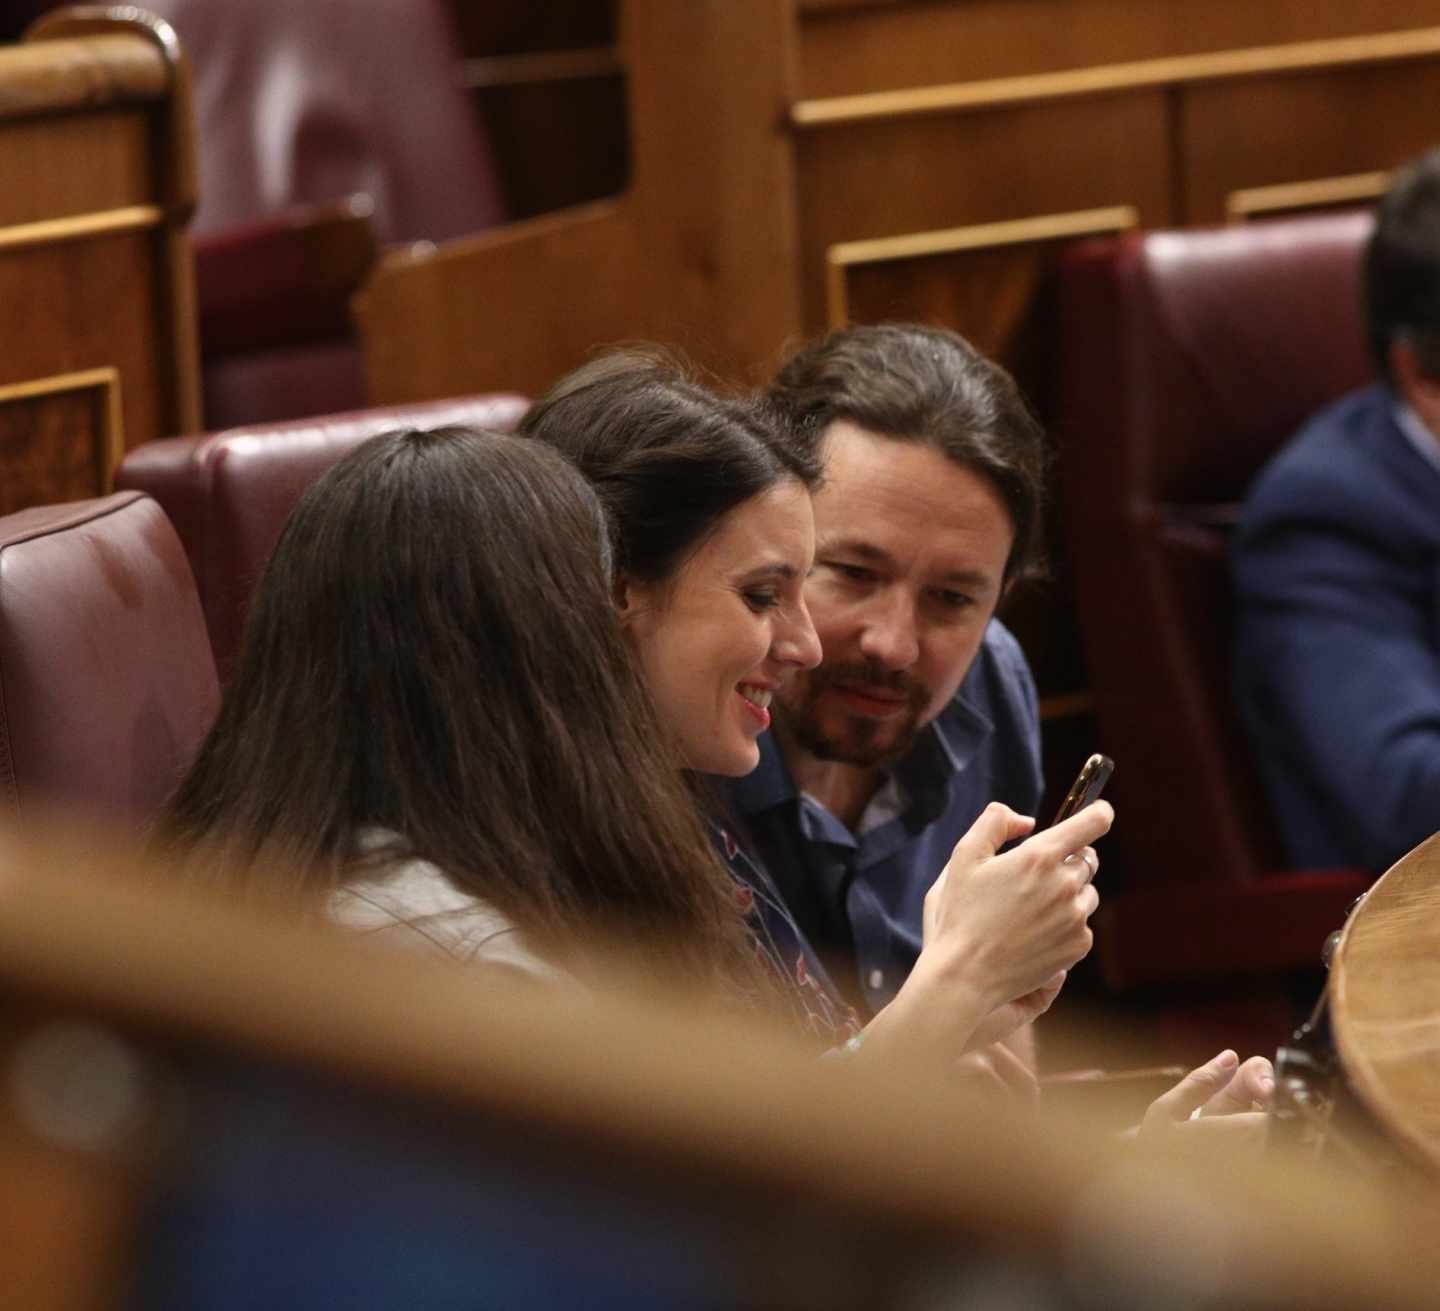 Más frentes para Podemos: admitida a trámite una denuncia contra sus primarias